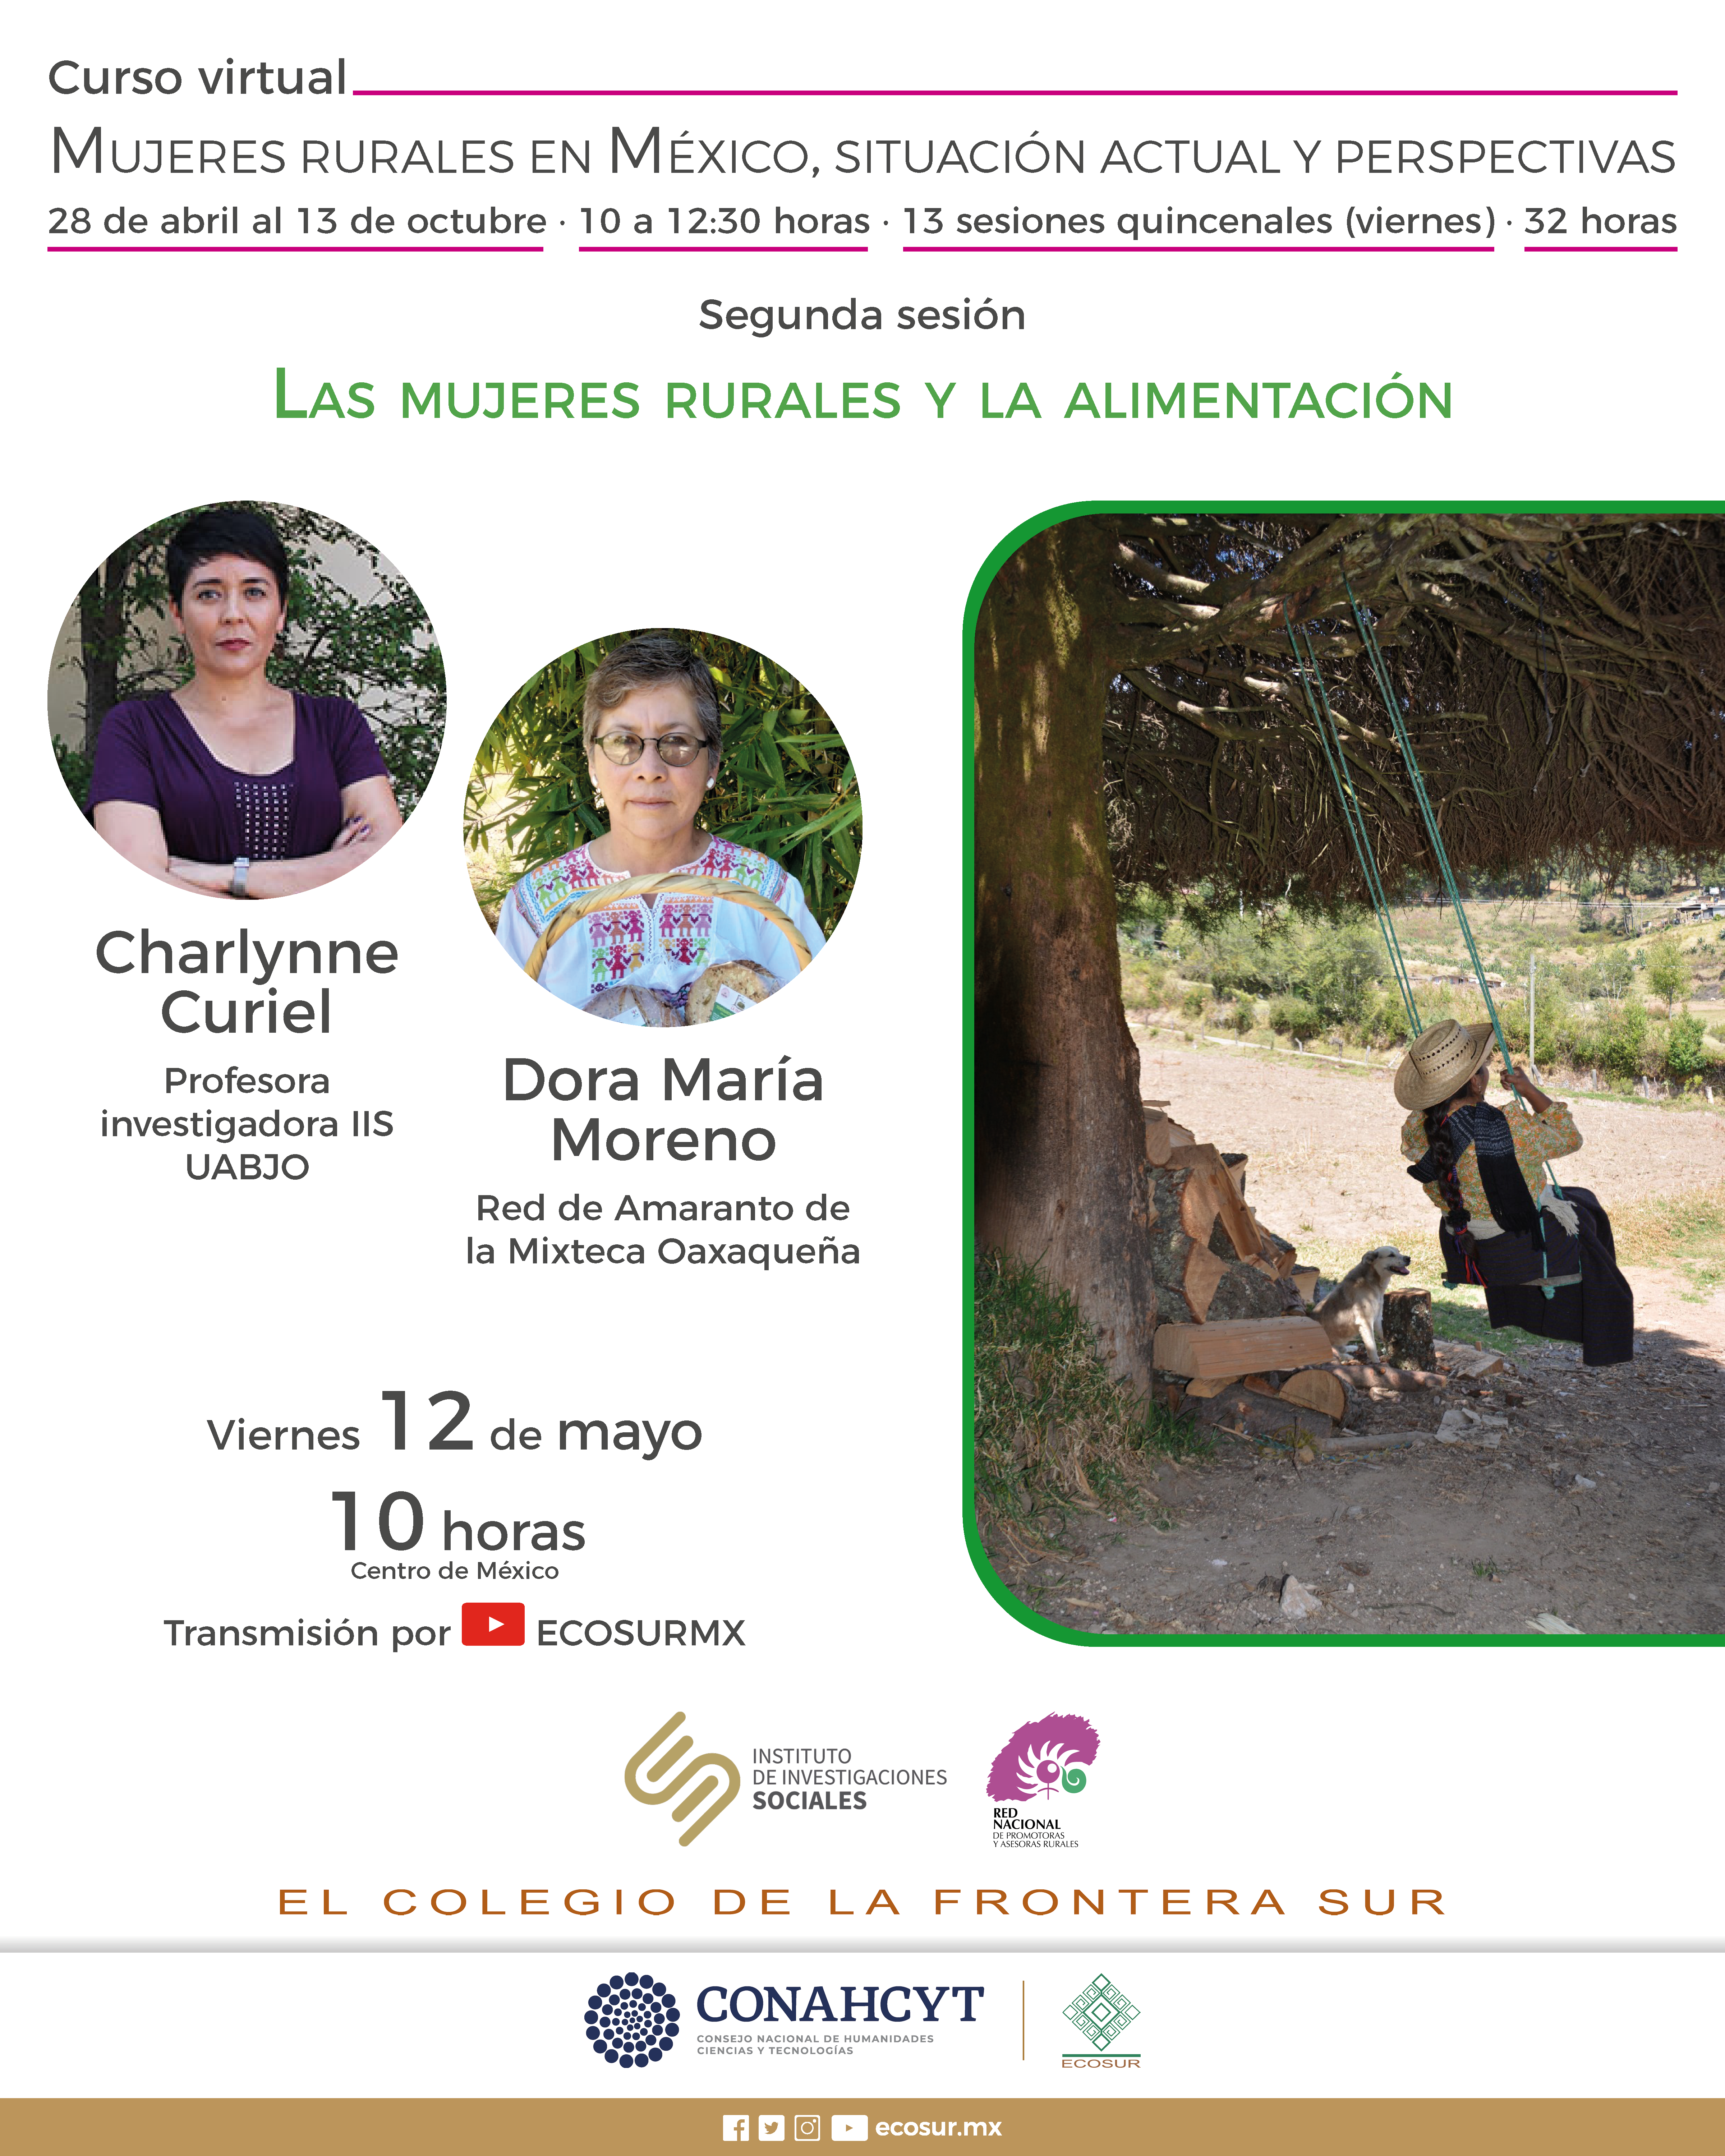 Mujeres rurales en México. Situación actual y perspectivas